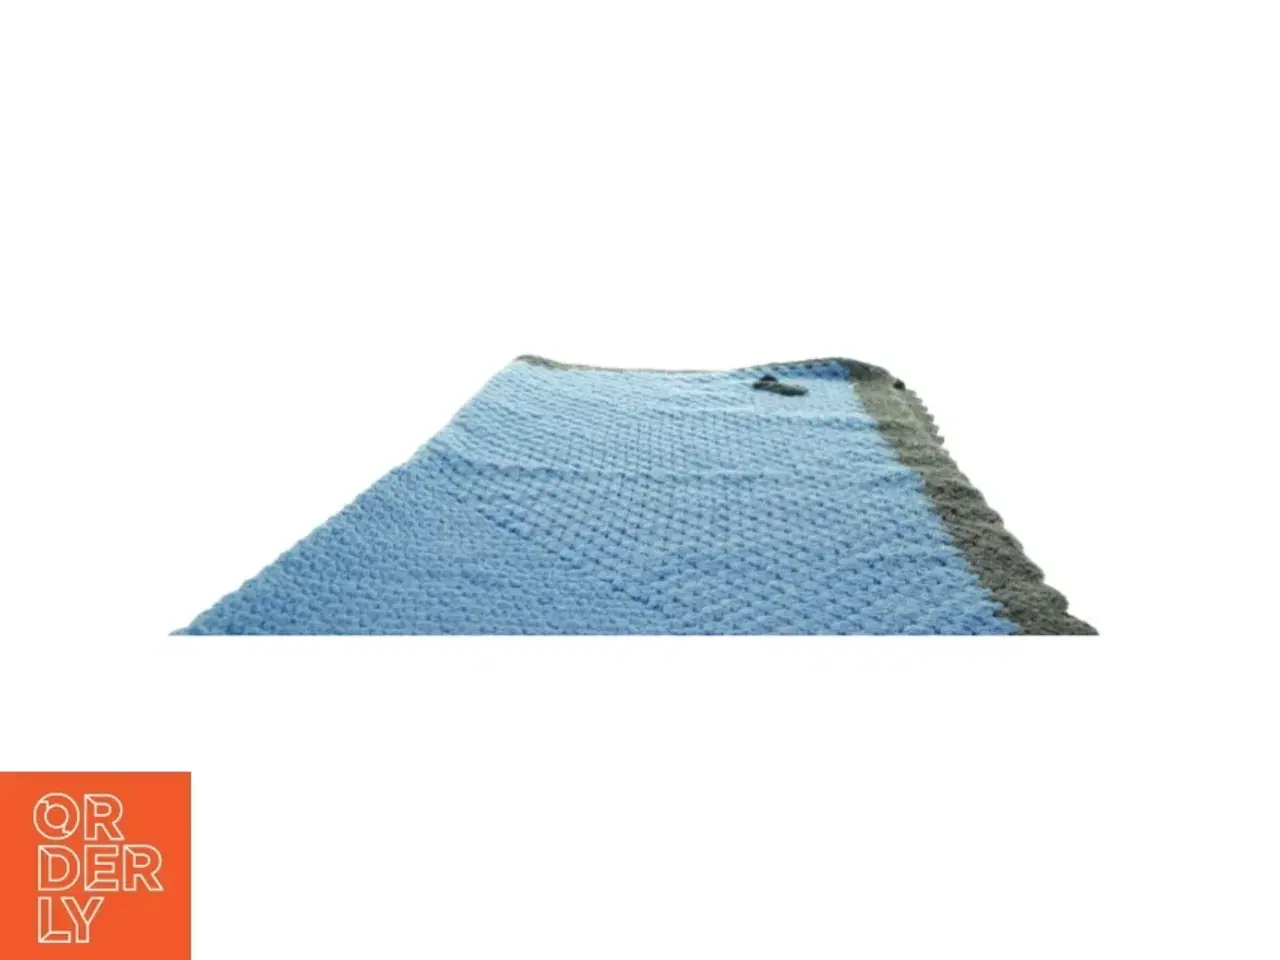 Billede 3 - Blåt og gråt tæppe (1m x 1m)